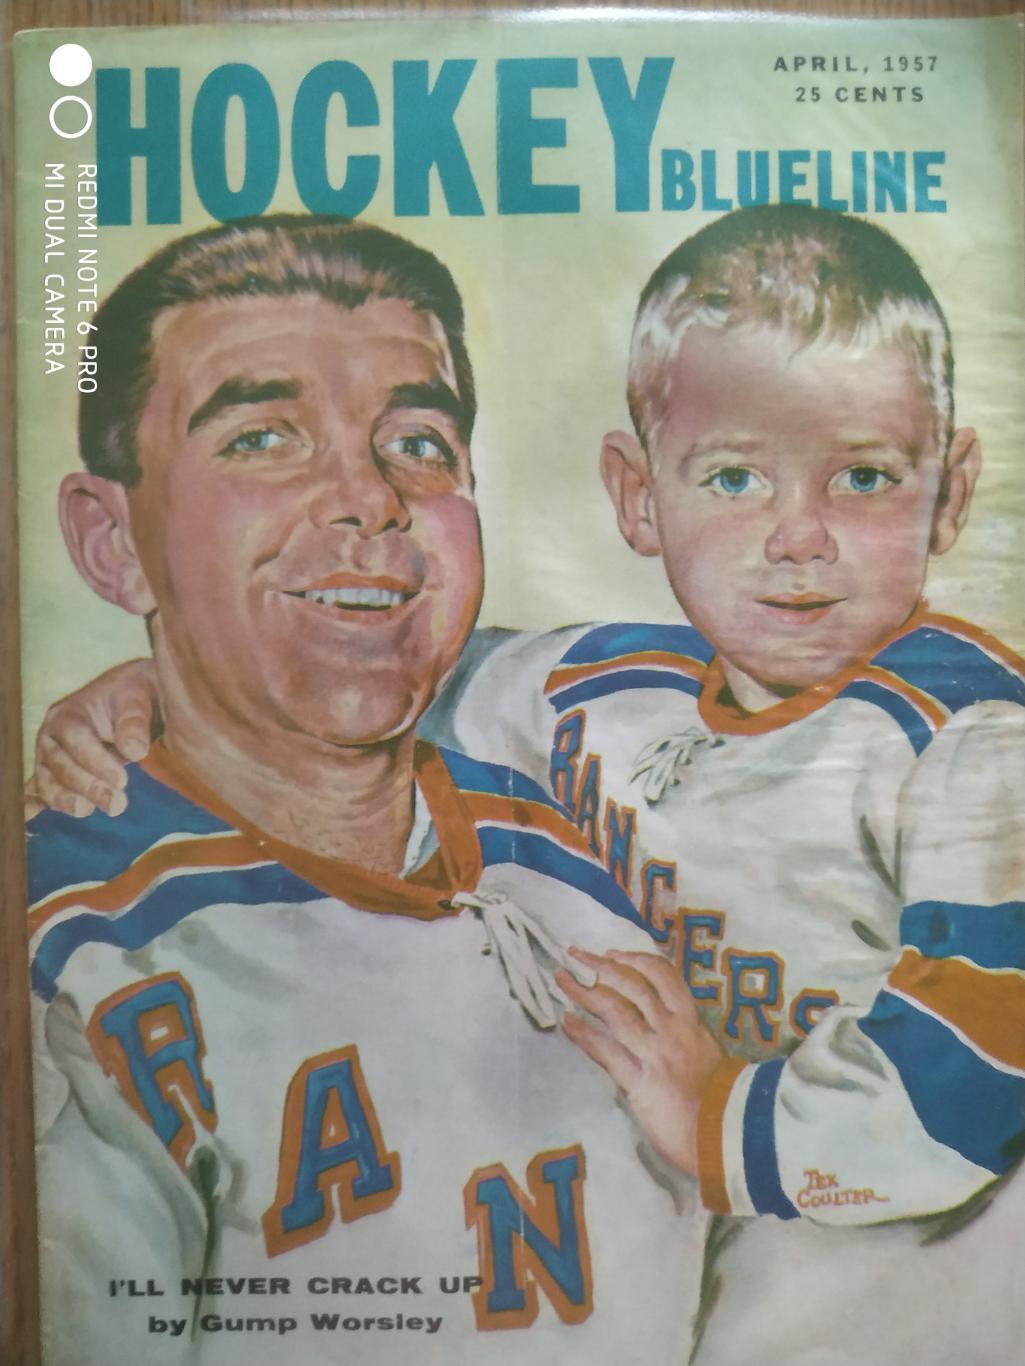 ЖУРНАЛ ЕЖЕМЕСЯЧНИК НХЛ NHL 1957 APRIL THE HOCKEY MONTHLY BLUELINE